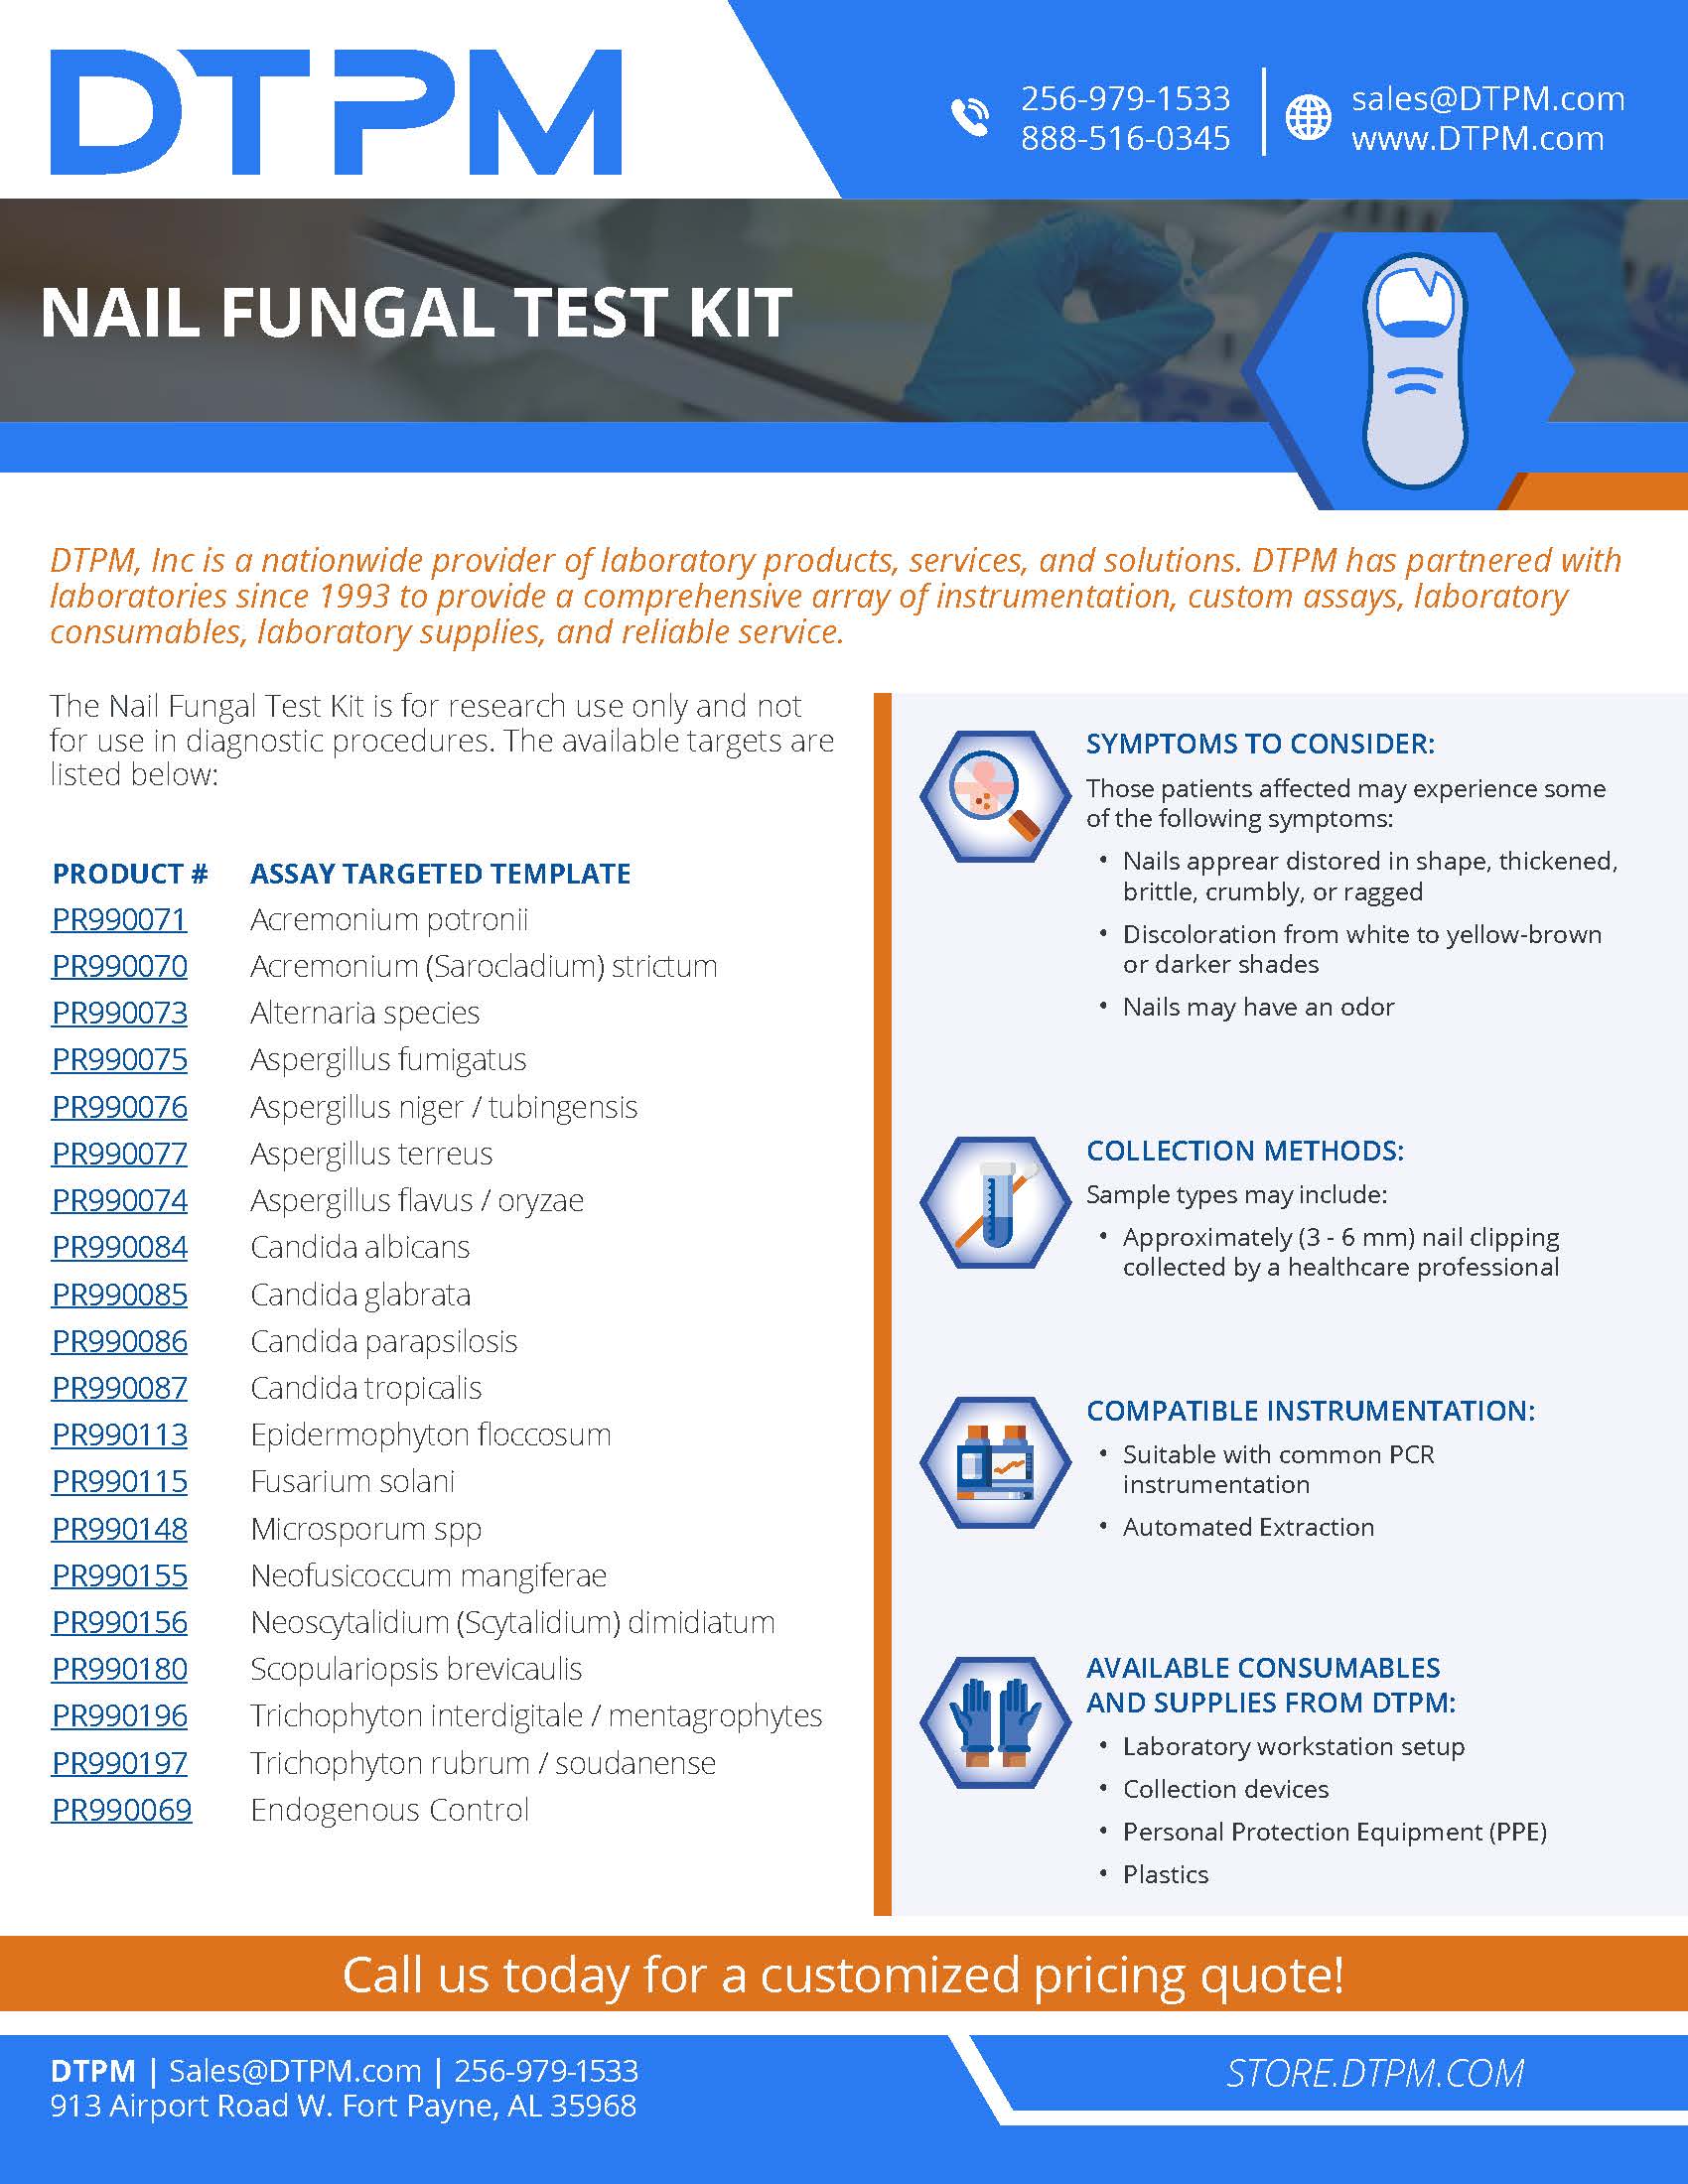 DTPM Nail Fungal Test Kit